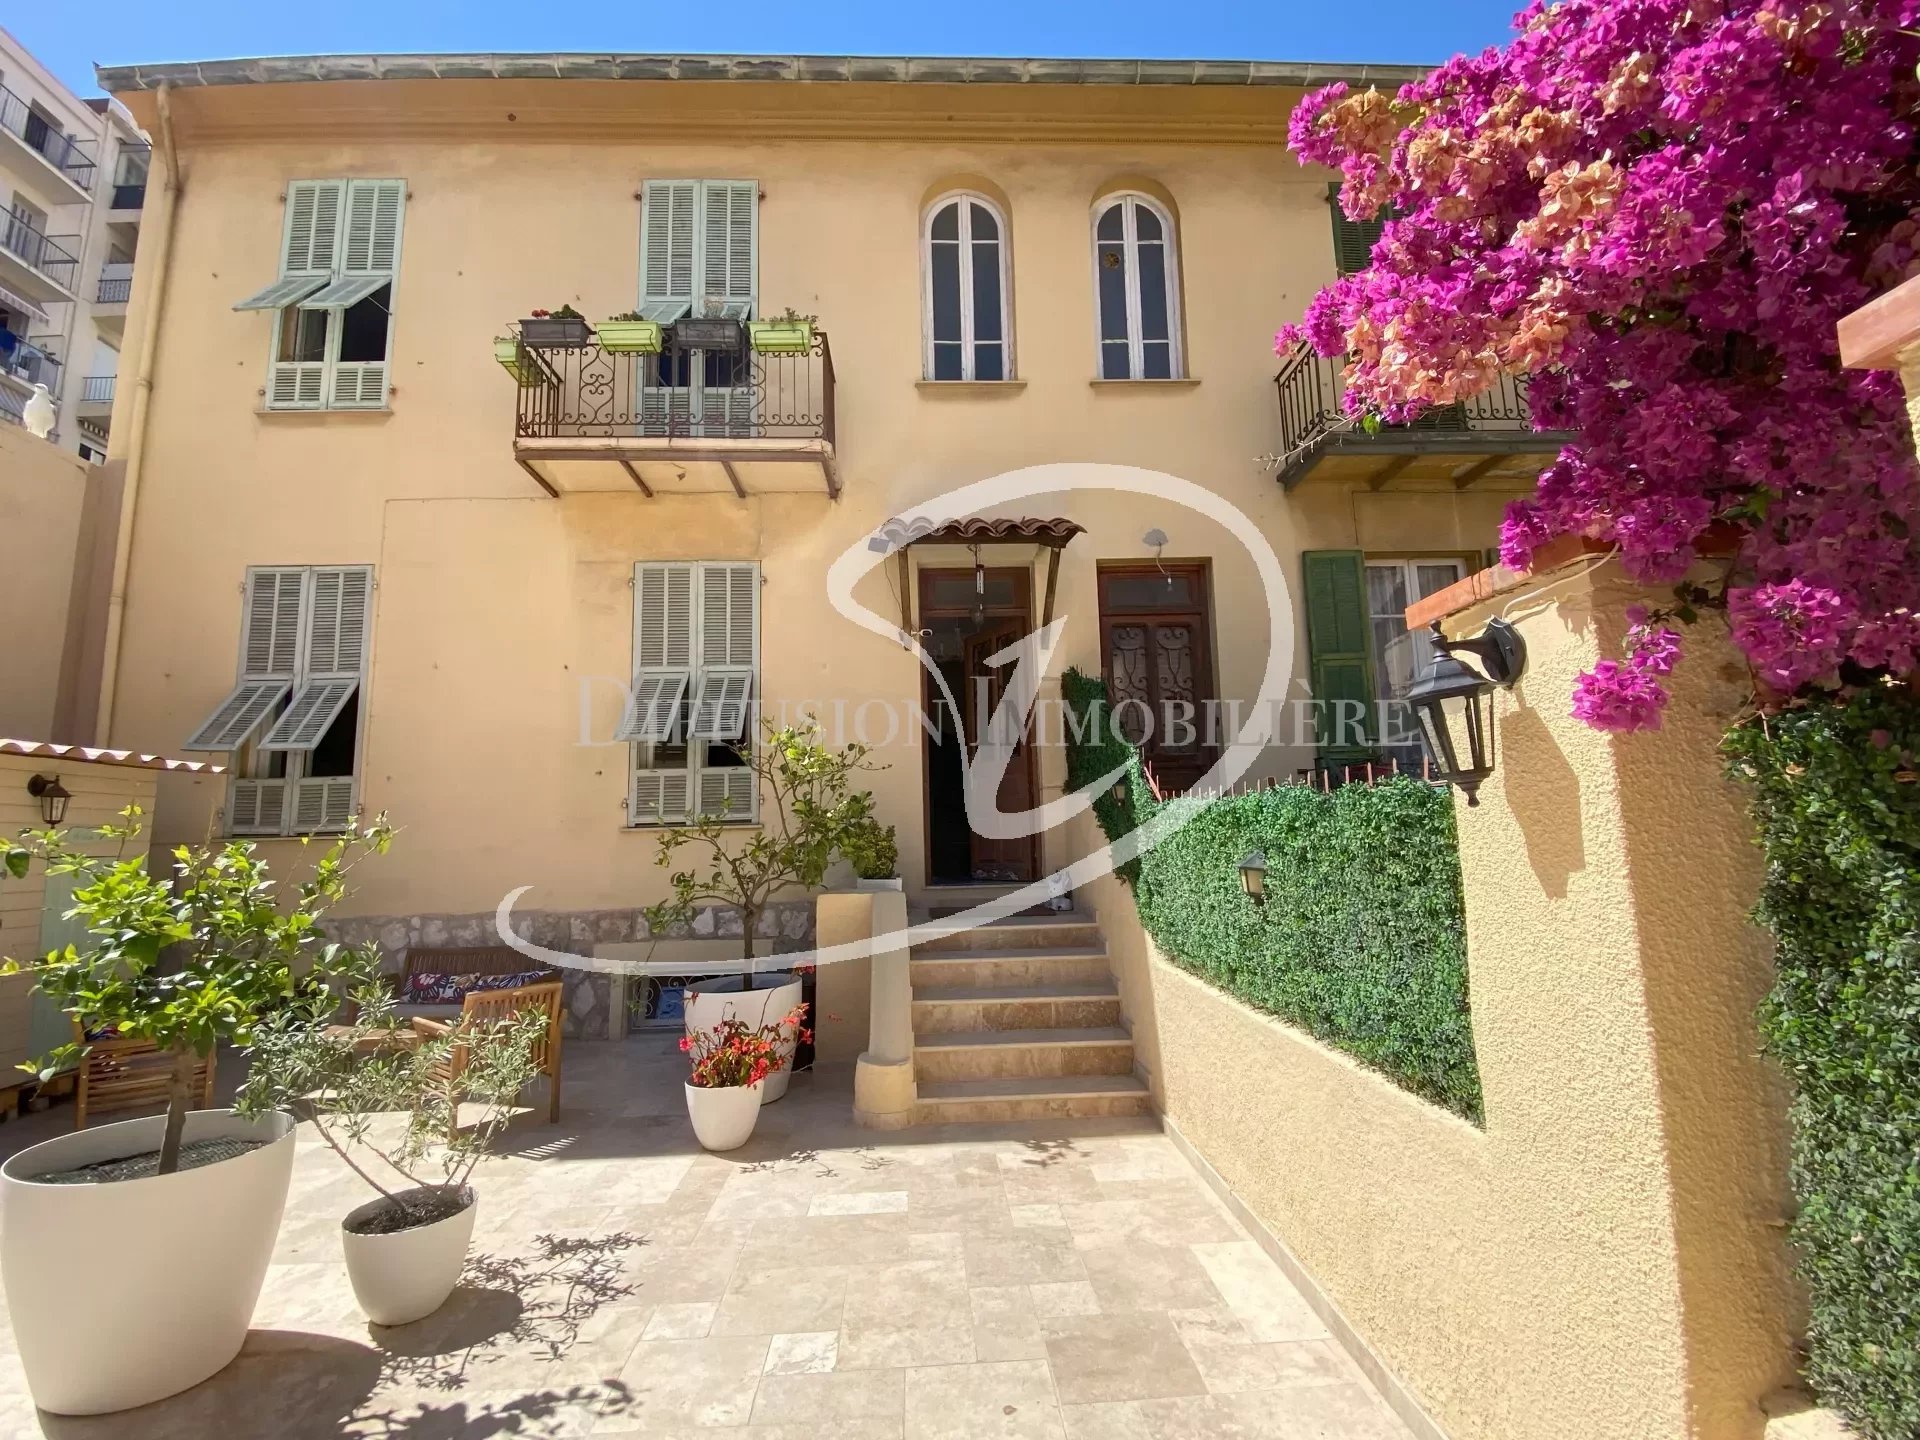 Vente Maison 160m² 5 Pièces à Nice (06200) - Diffusion Immobiliere